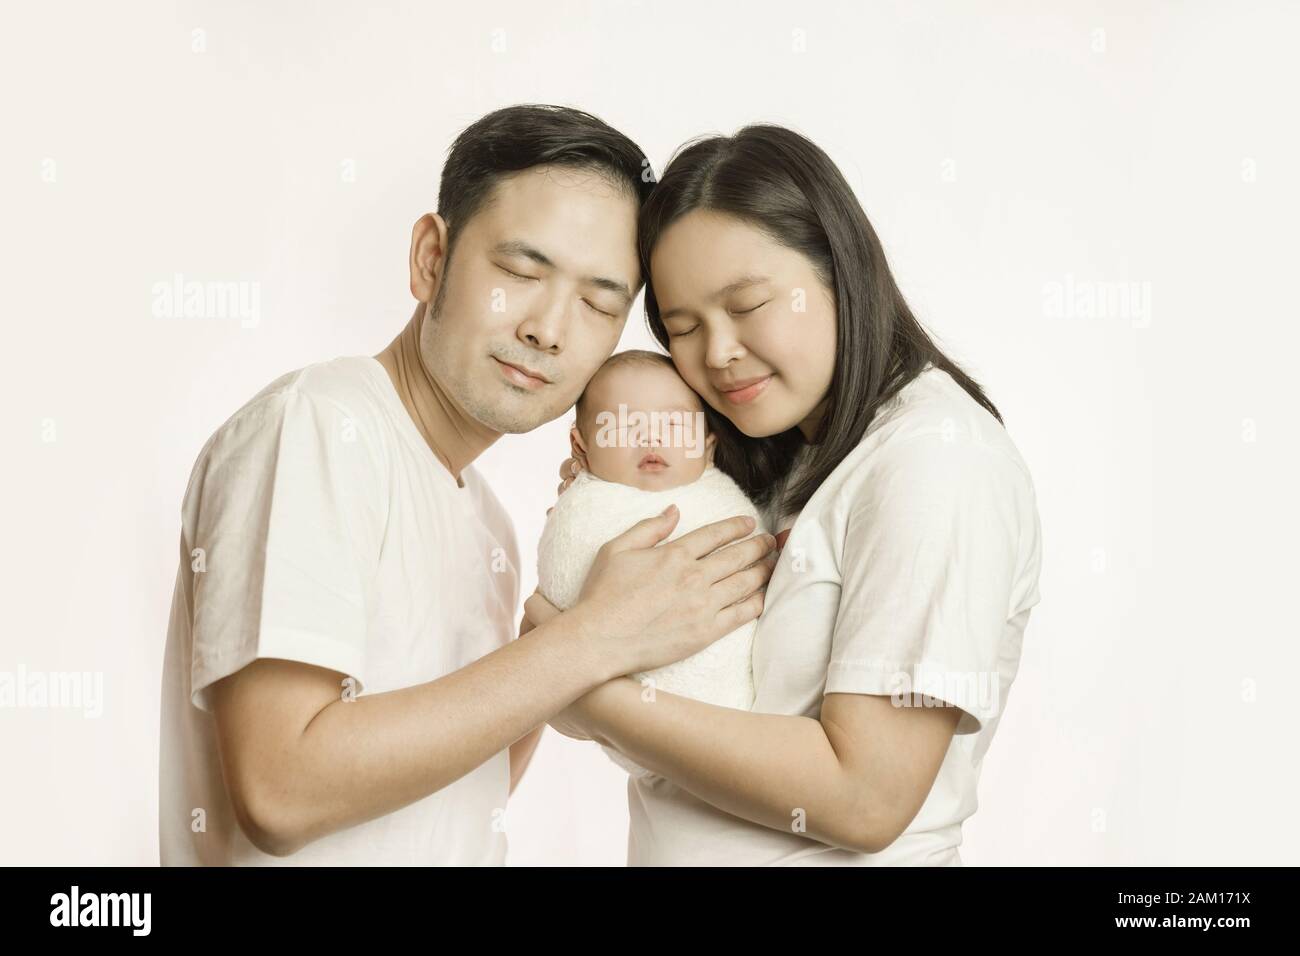 Die glückliche asiatische Familie von Mutter und Sohn im Studio, das Porträt dreht, umarmen sich lächelnd mit geschlossenen Augen. Elternschaft und Familien-Rela Stockfoto